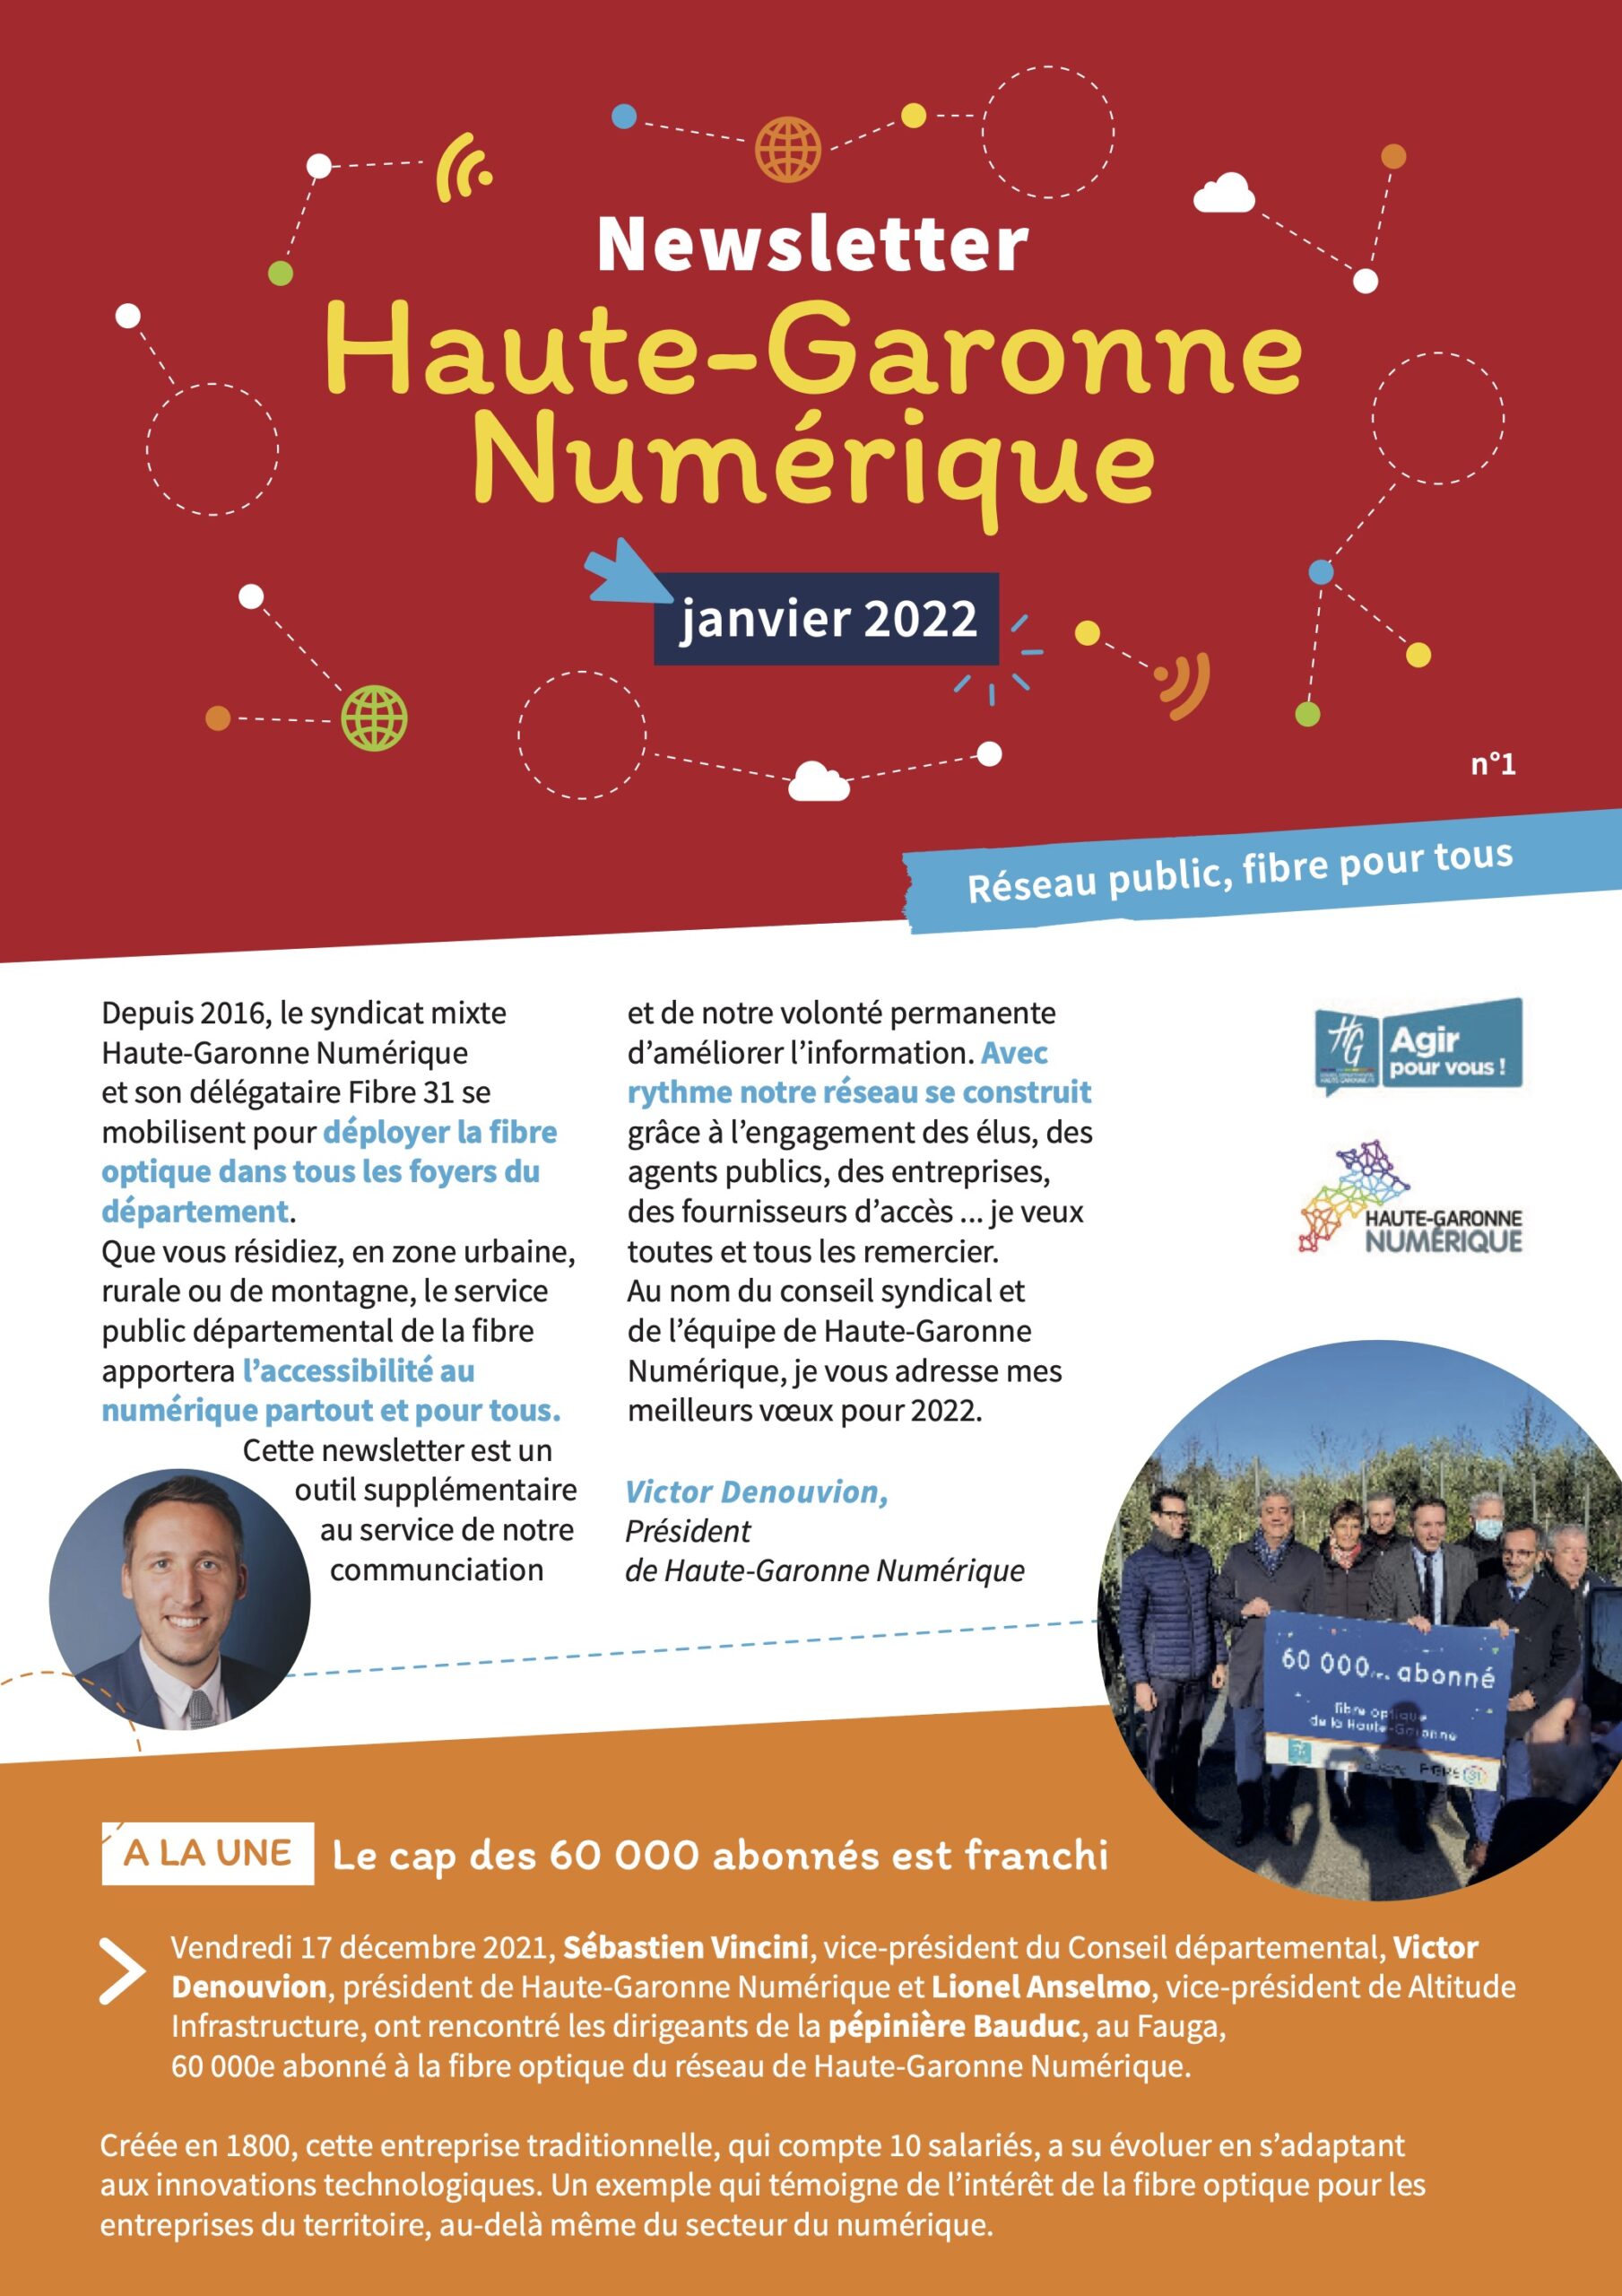 Lire la suite à propos de l’article Découvrez la newsletter de Haute-Garonne Numérique